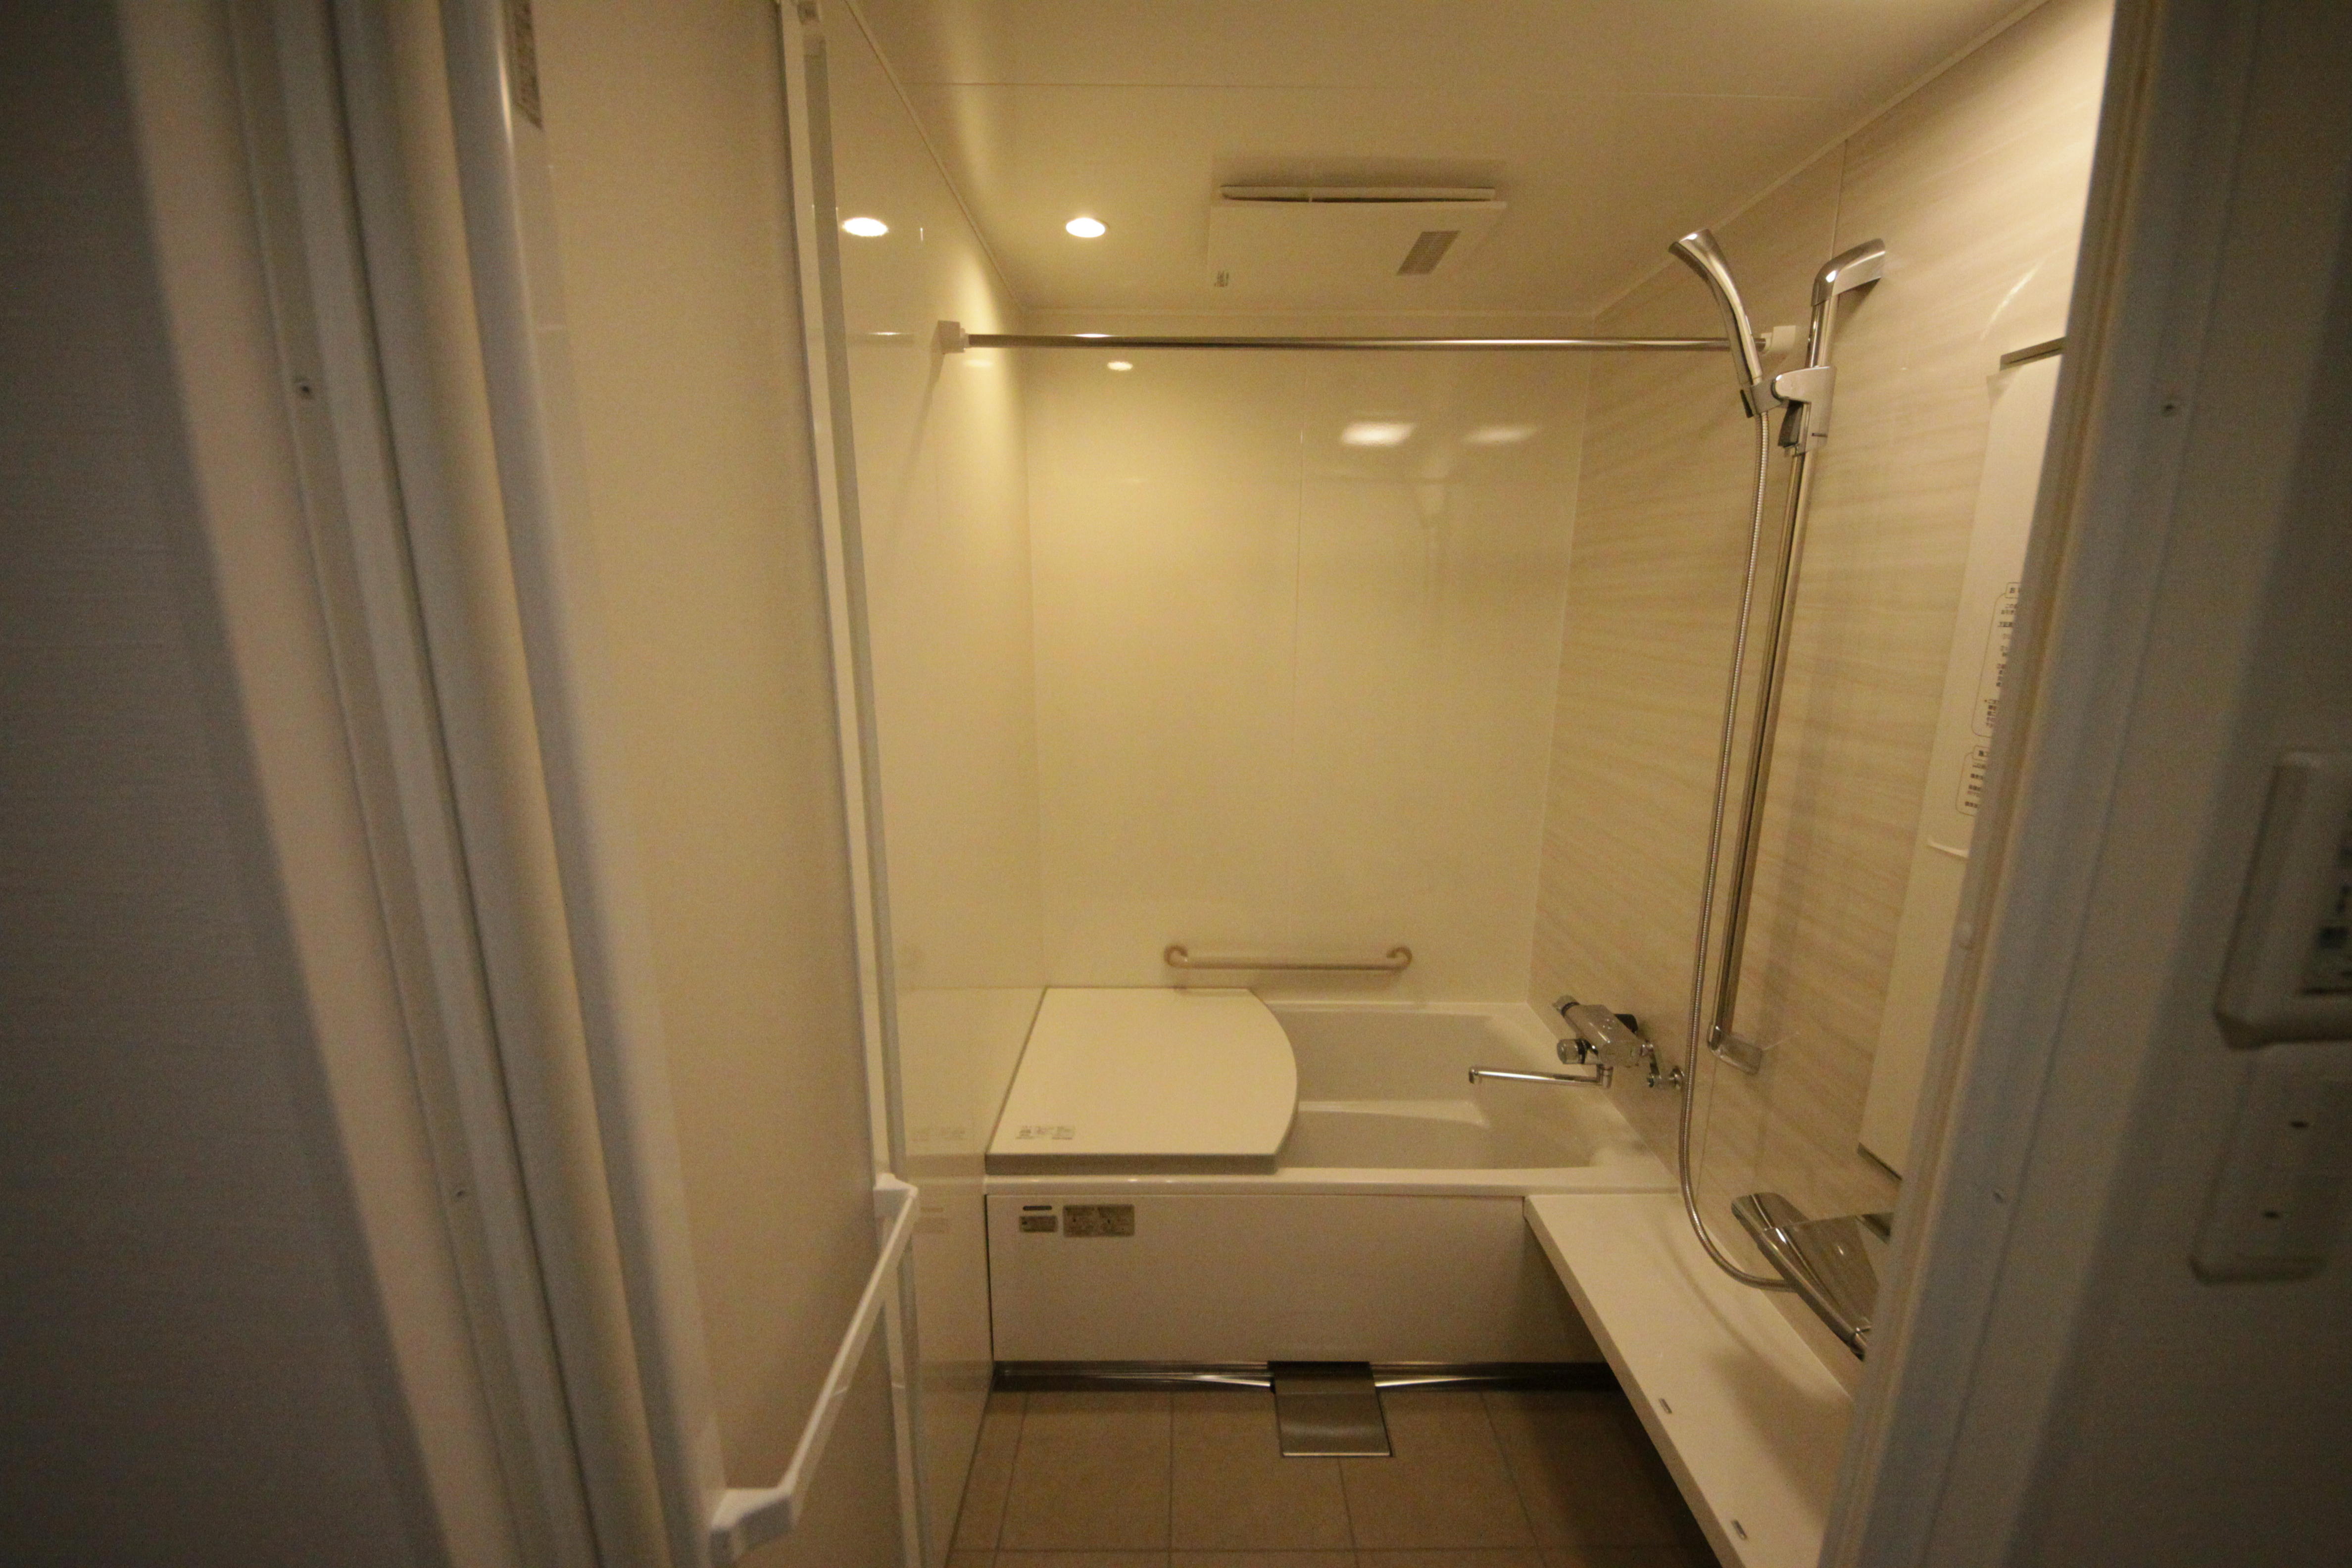 A様邸。浴室ユニットバス入替リフォームの事例です。